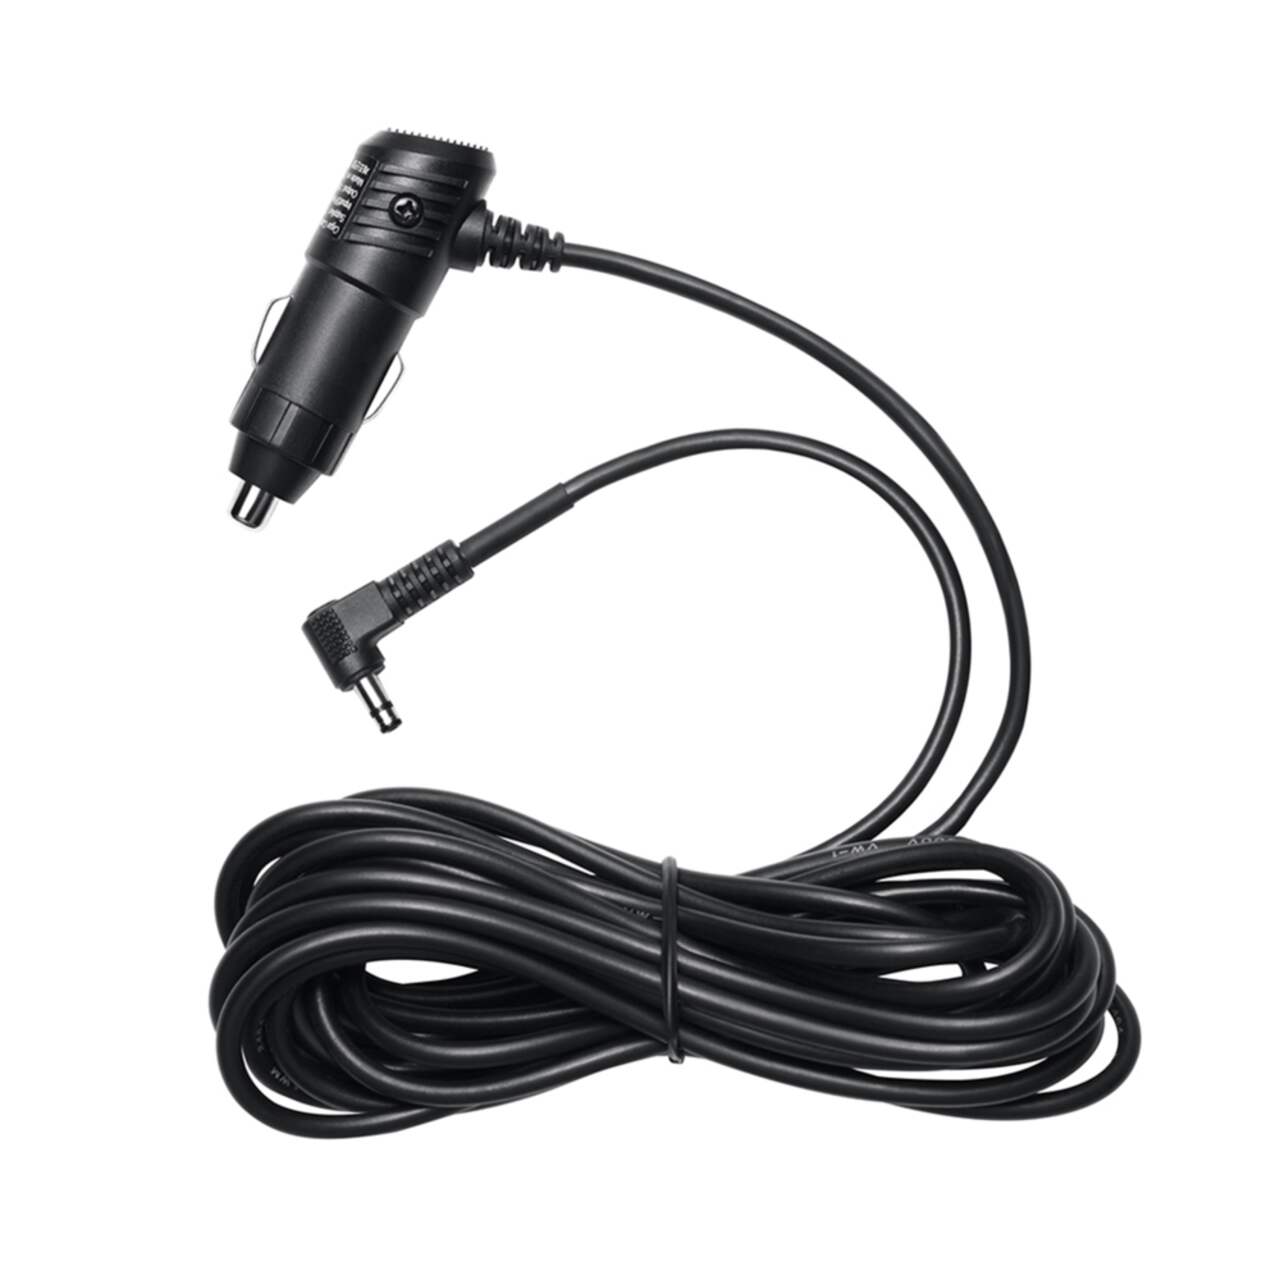 Thinkware 12V Car Power Cable, for Dash Camera